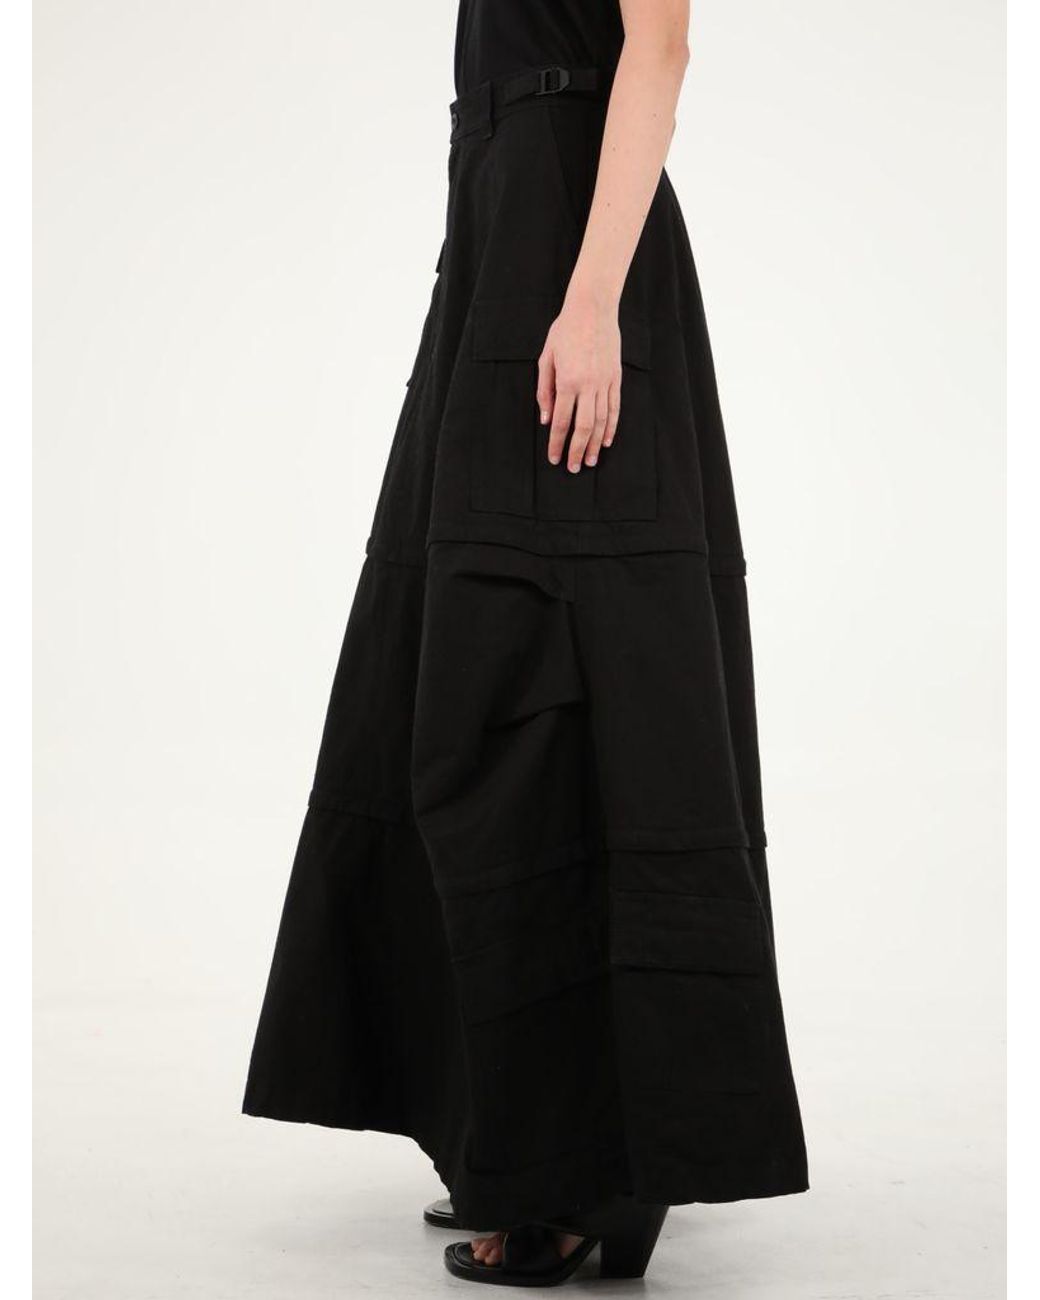 Balenciaga Cotton Cargo Maxi Skirt in Black | Lyst